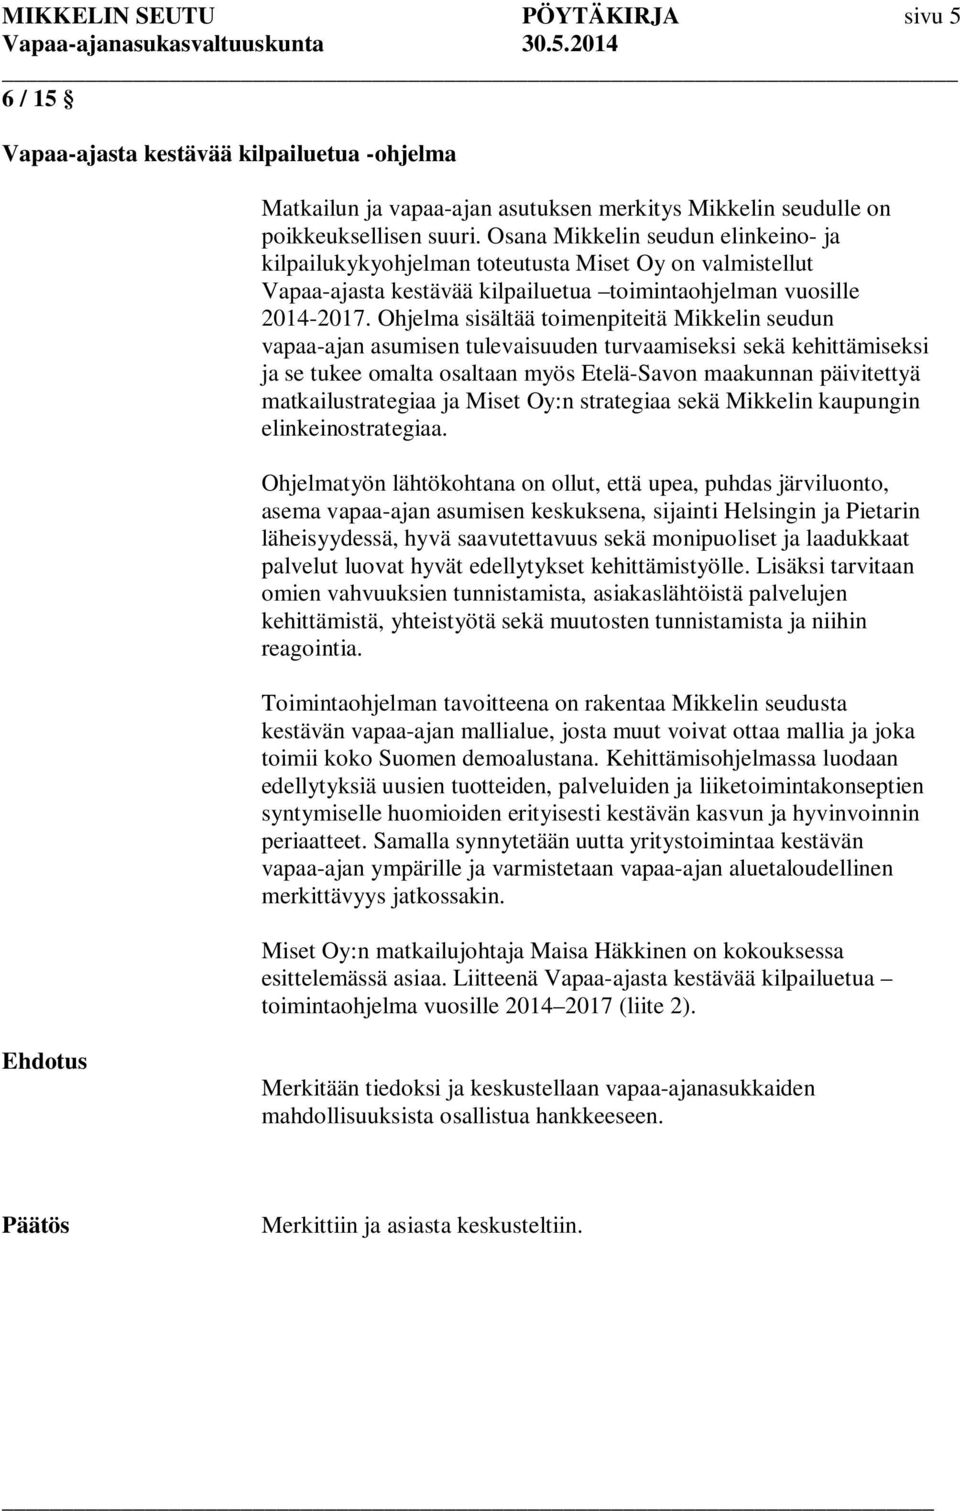 Ohjelma sisältää toimenpiteitä Mikkelin seudun vapaa-ajan asumisen tulevaisuuden turvaamiseksi sekä kehittämiseksi ja se tukee omalta osaltaan myös Etelä-Savon maakunnan päivitettyä